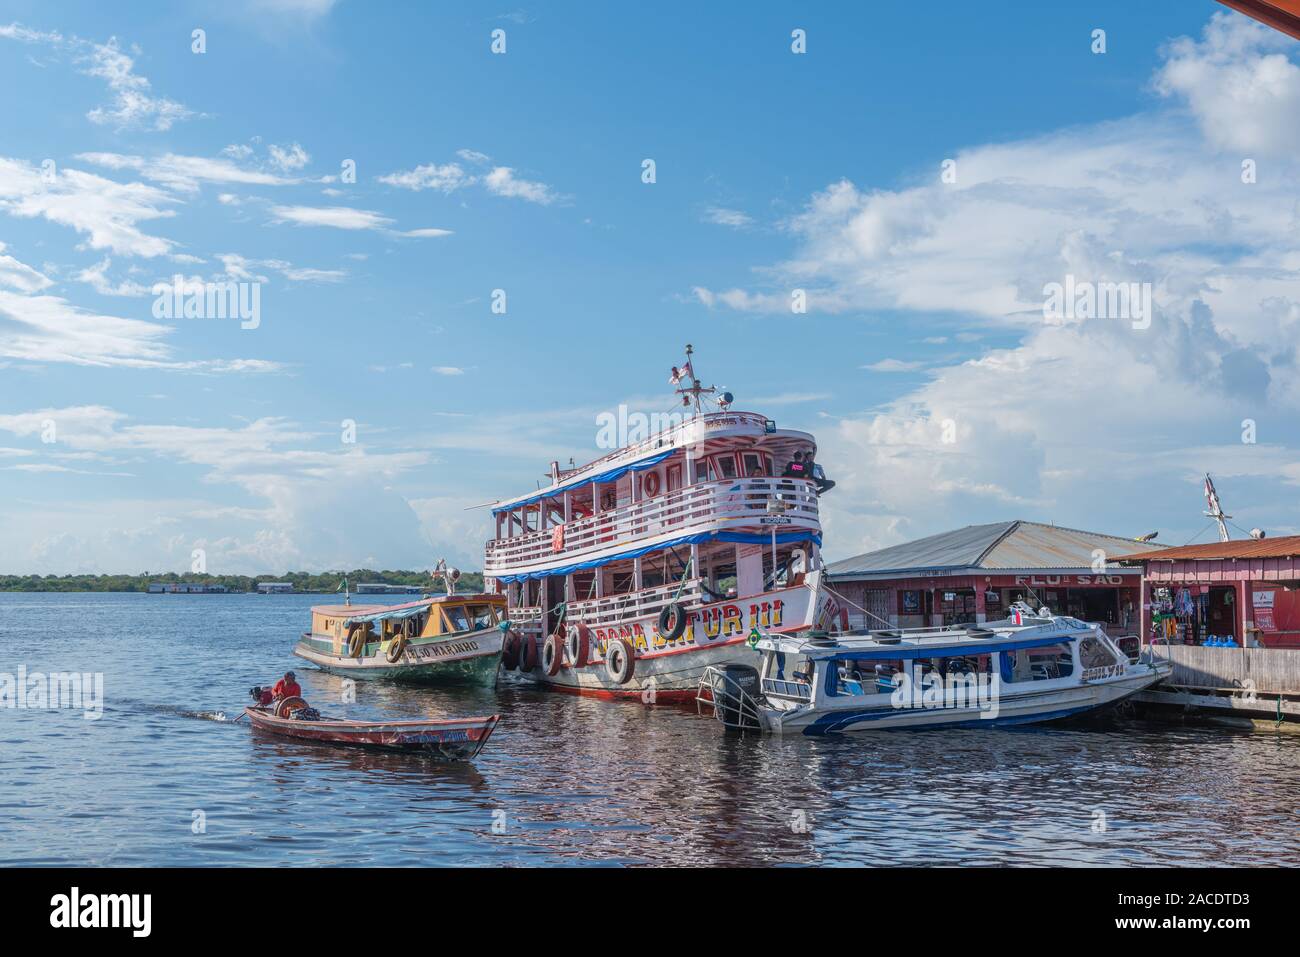 Vivace città di Tefé sul Lago di Tefé, Amazona River, Amazon Membro, Northern Brasilia, America Latina Foto Stock